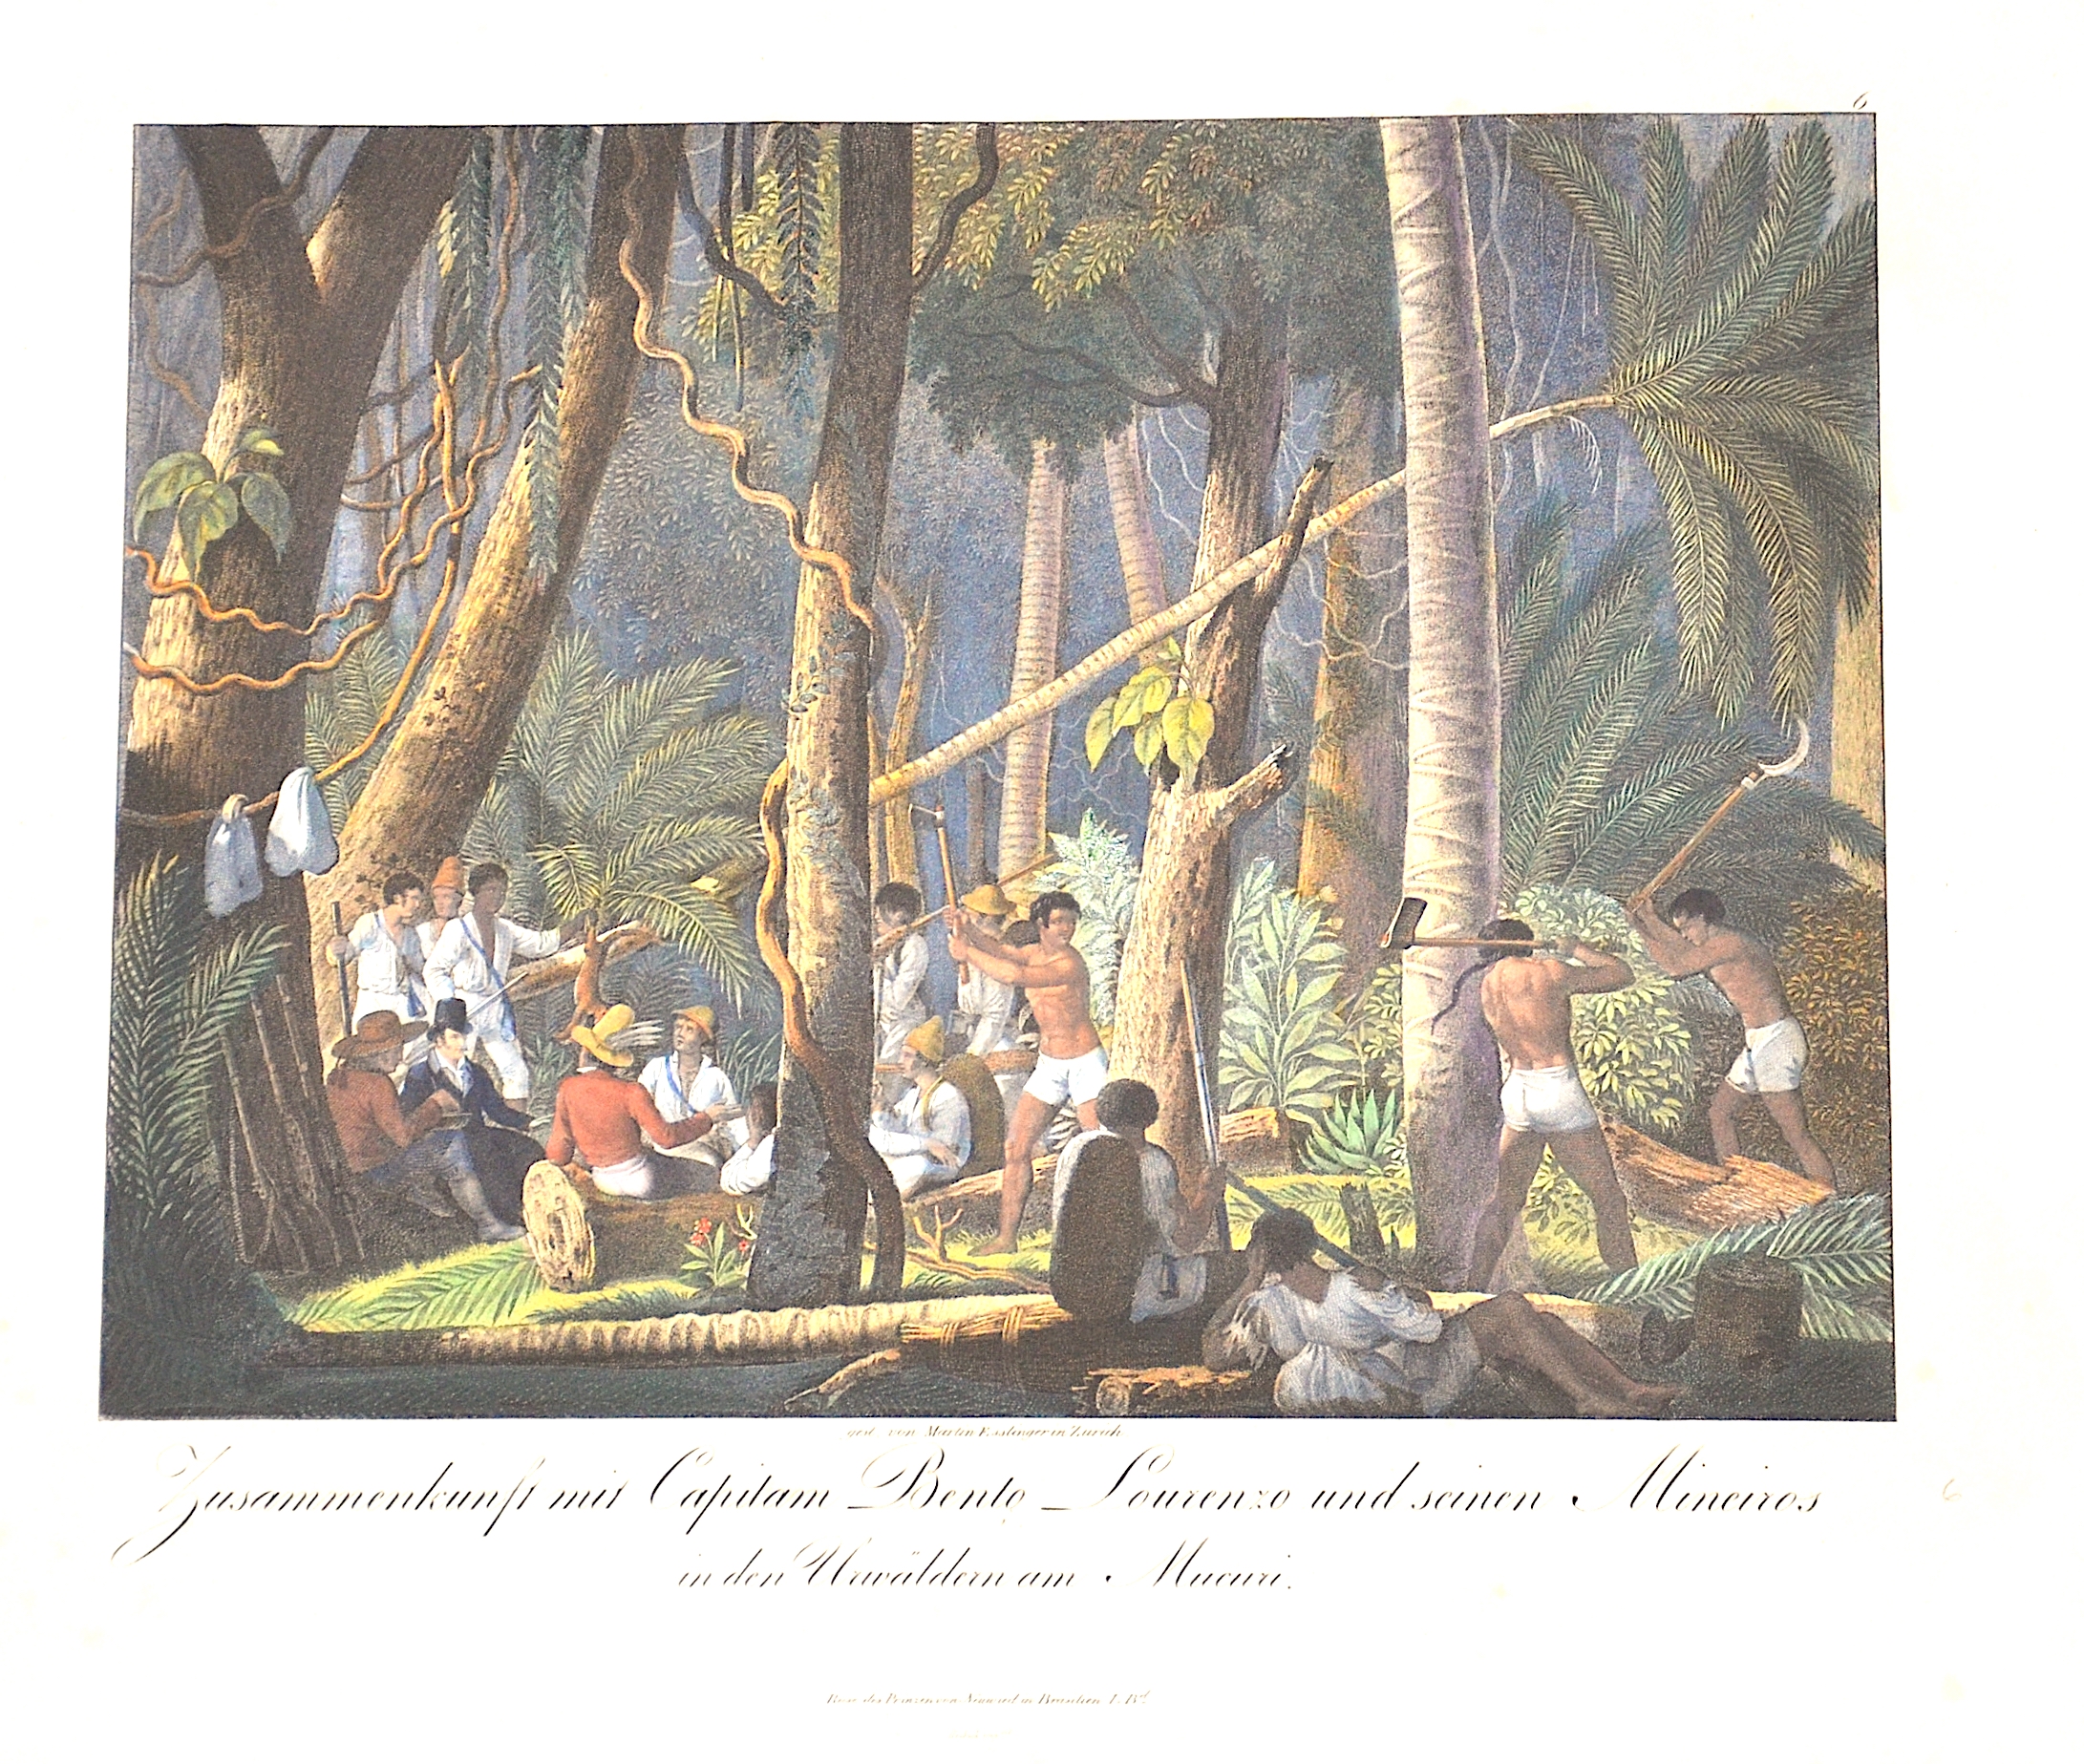 Wied-Neuwied Maximilian, Zusammenkunft mit Capilam Bento Lourenzo und seinen Mineiros in den Urwäldern am Mucuri.